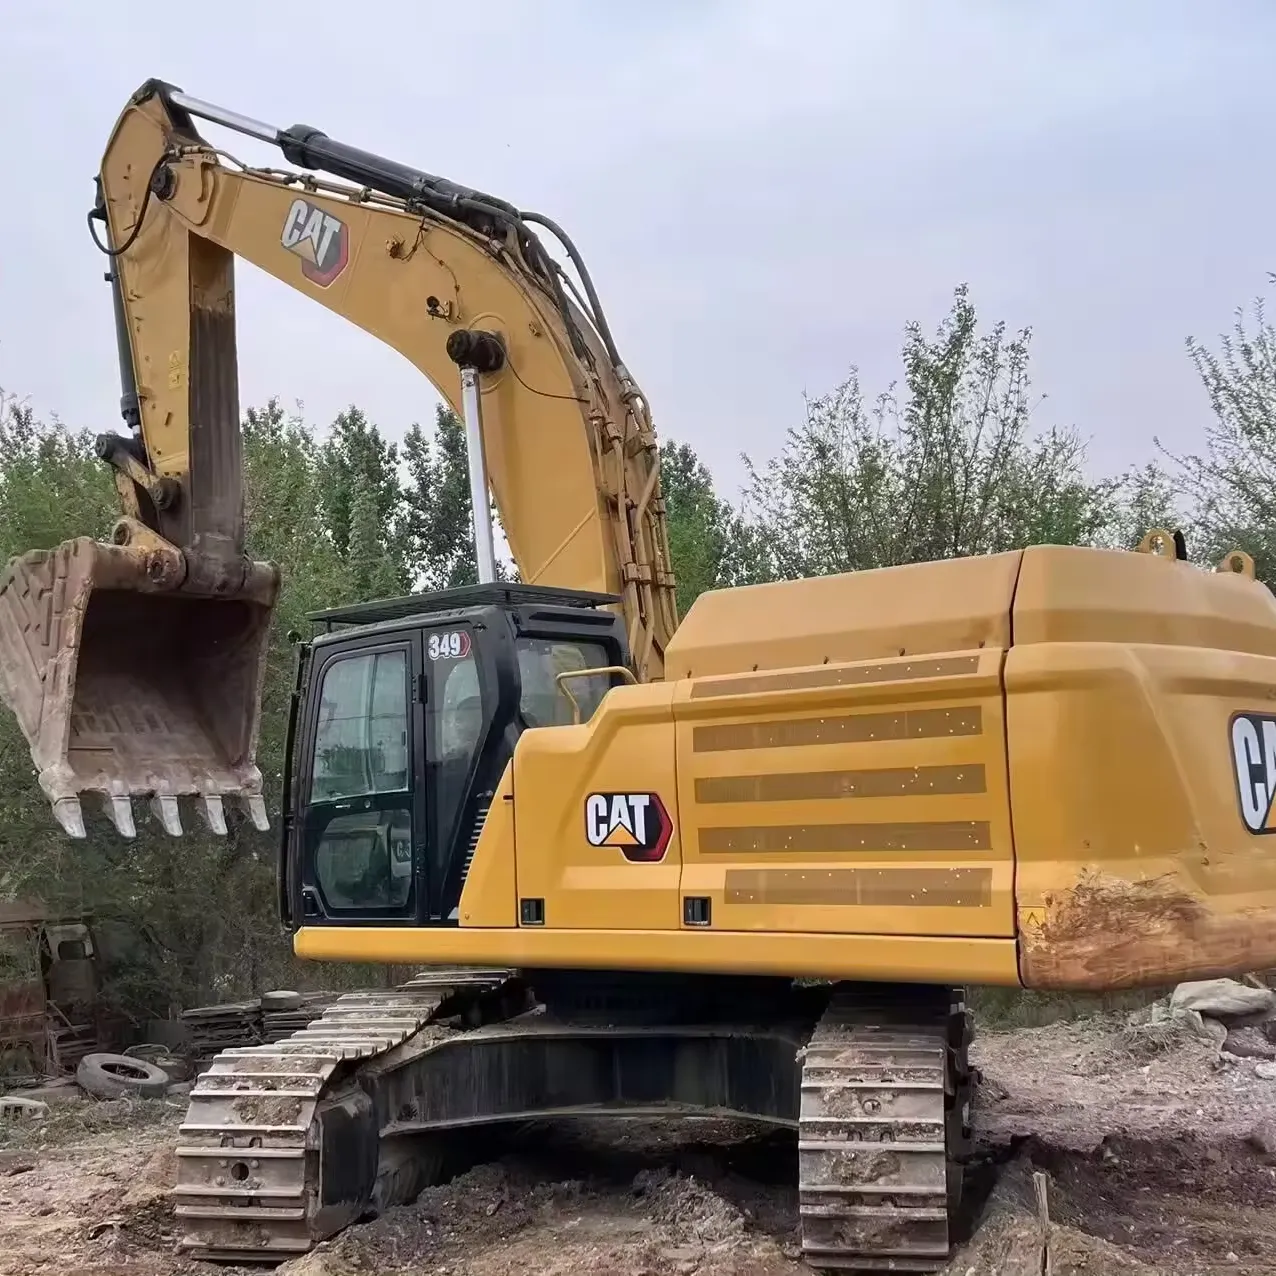 Excavateur de chat d'occasion 349 utilisé Catpillar 50 tonnes excavation de tranchée de minerai grande pelle hydraulique sur chenilles